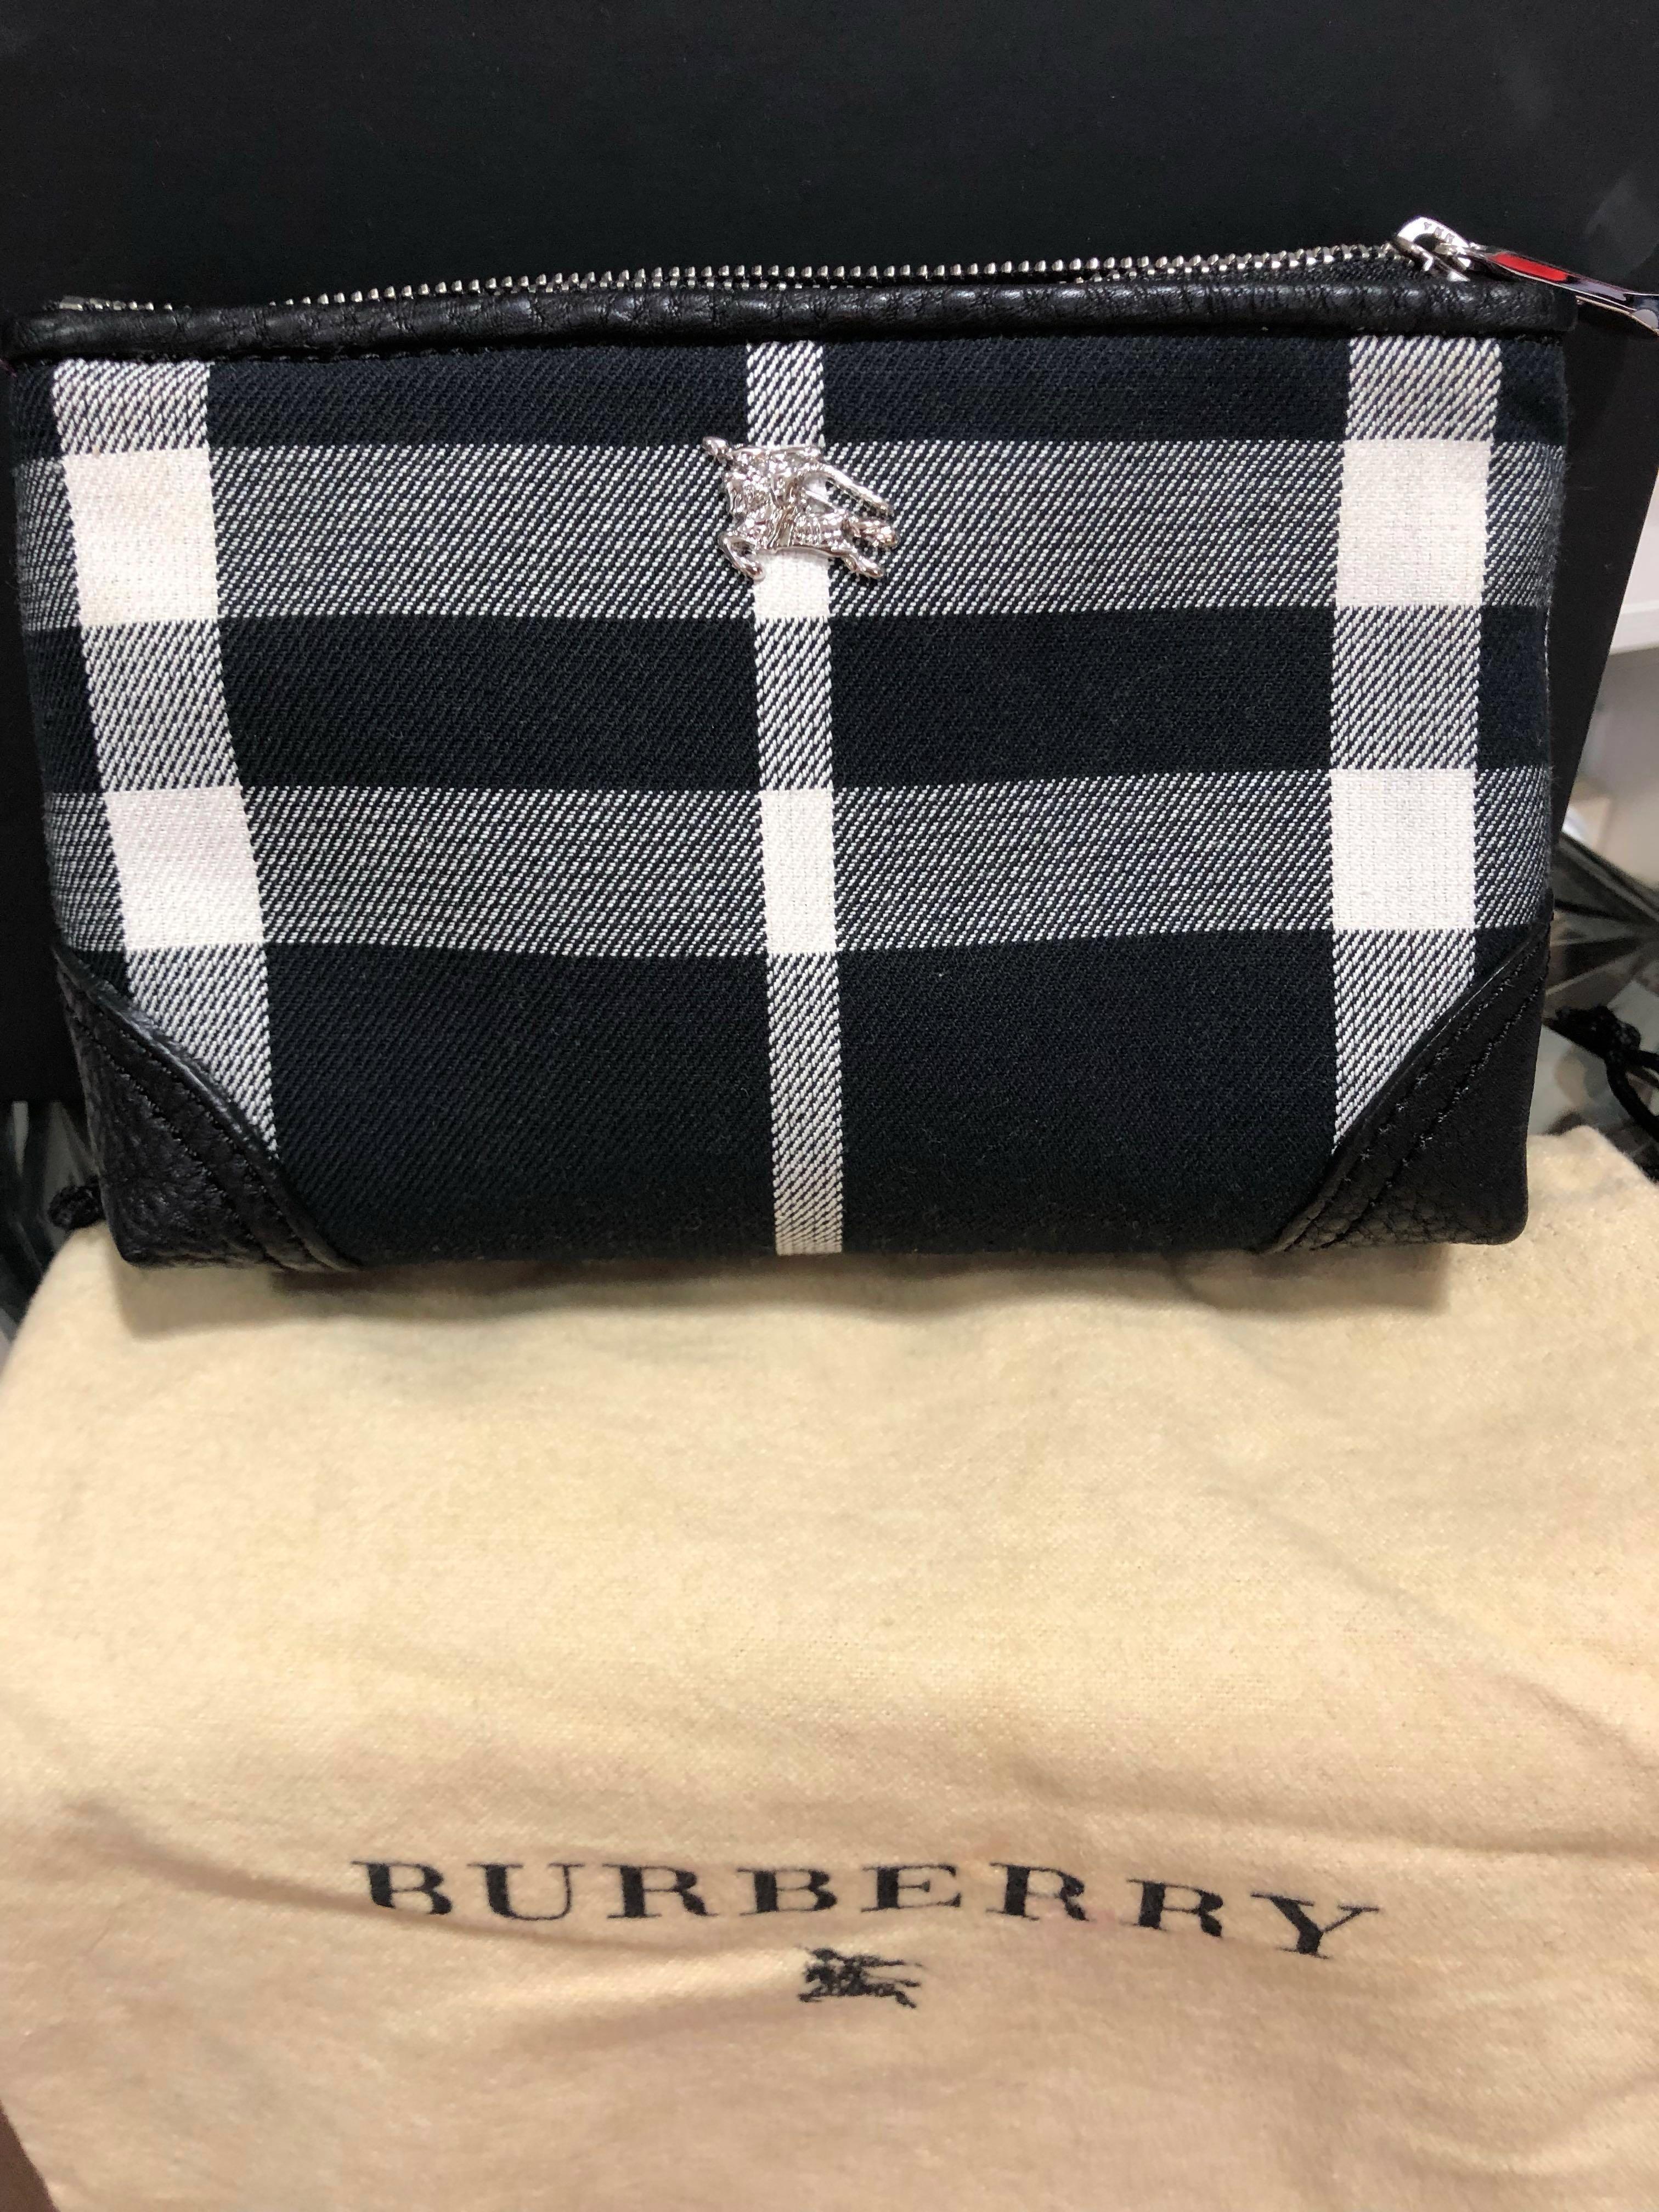 burberry make up bag